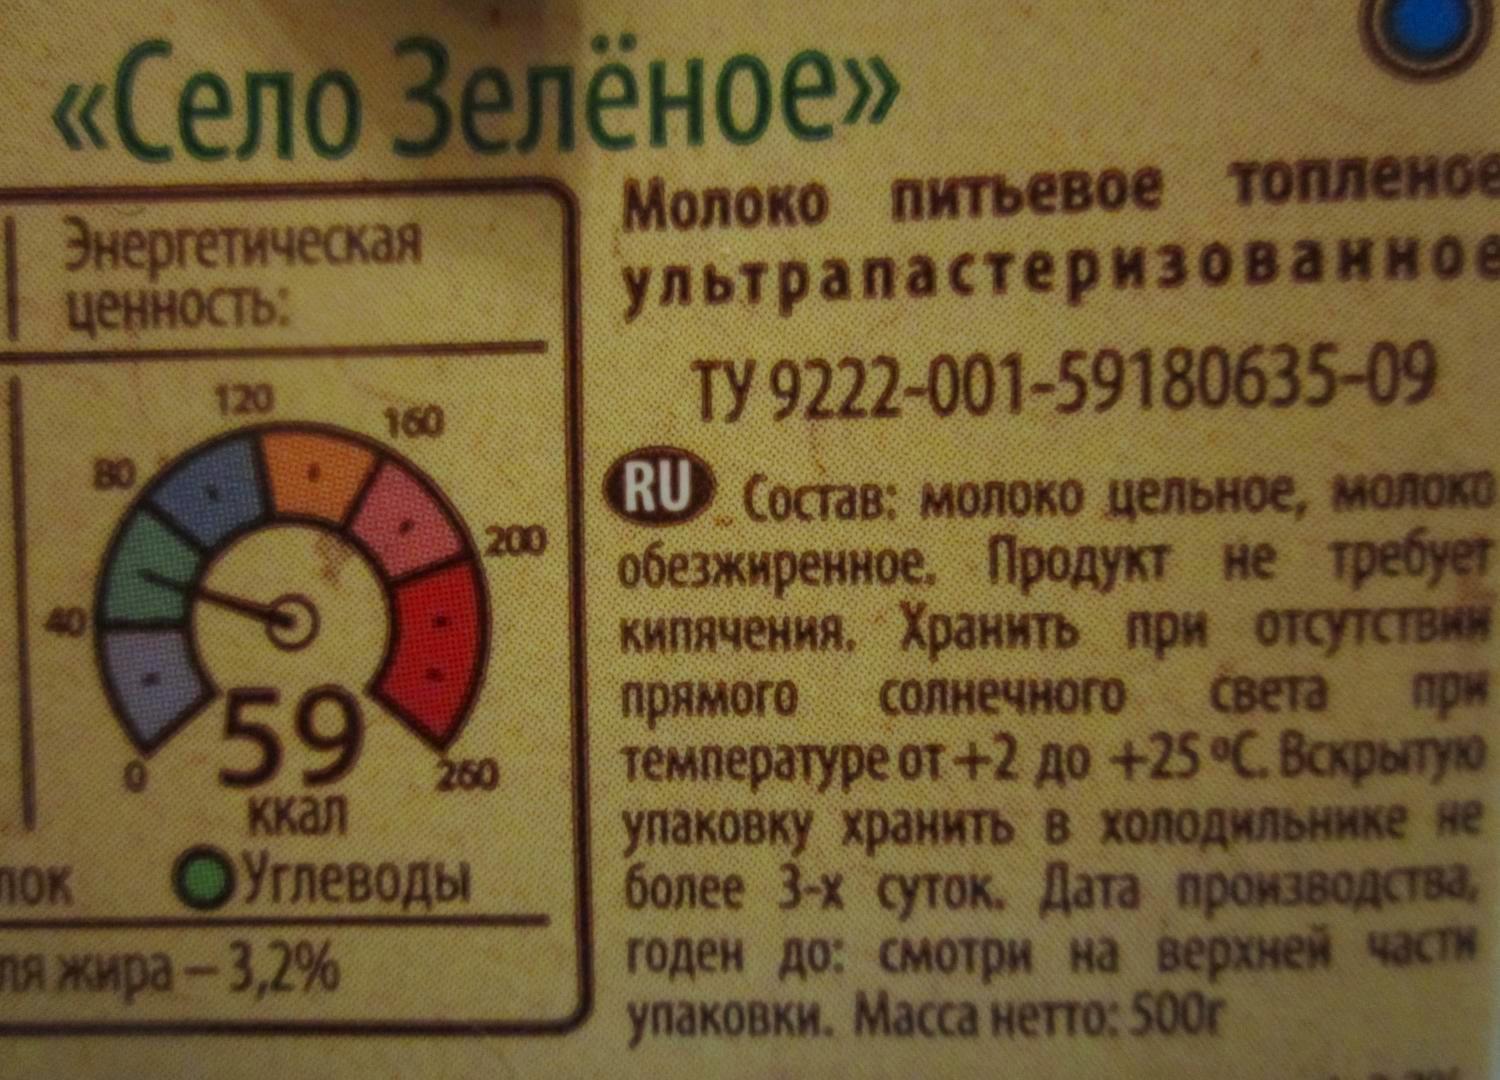 Молоко топленое ультрапаст. "Село Зеленое" 3,2%, 500 гр. 